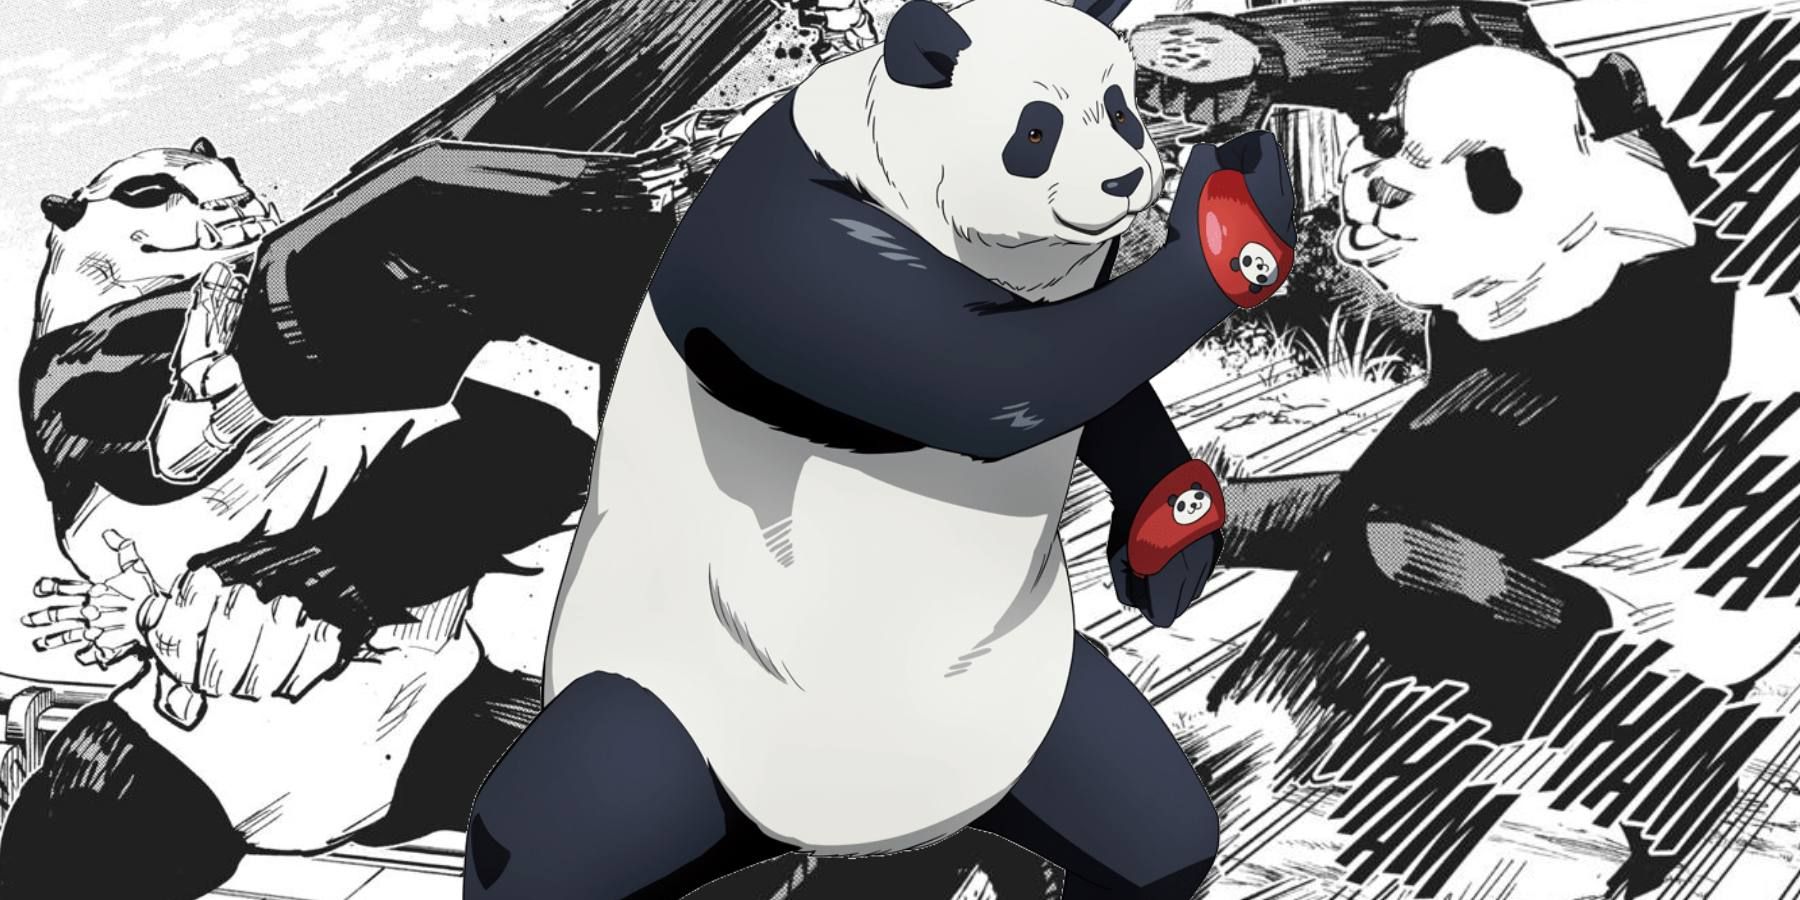 Jujutsu Kaisen Panda